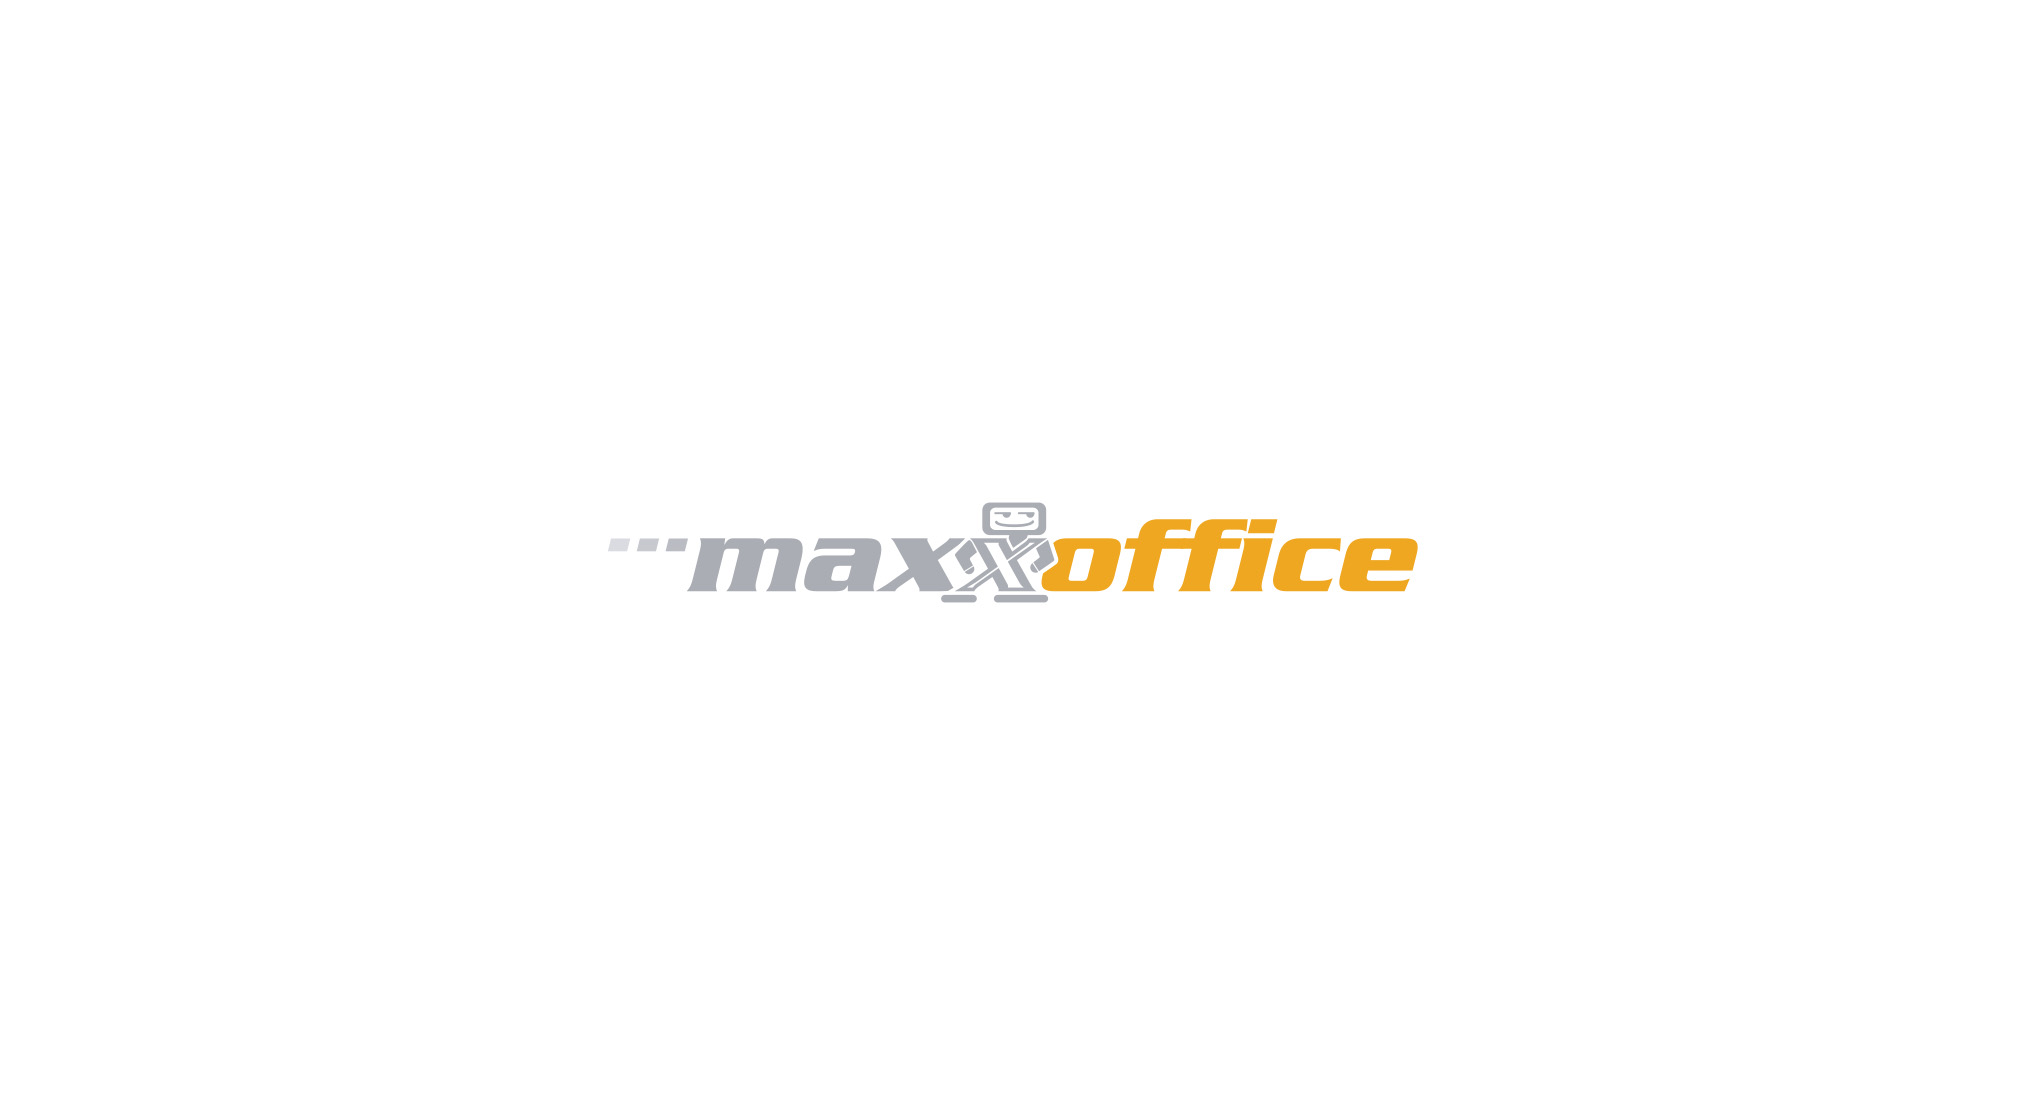 maxxoffice - technischer Schriftzug in grau und orange, das zweite x ist ein Roboter